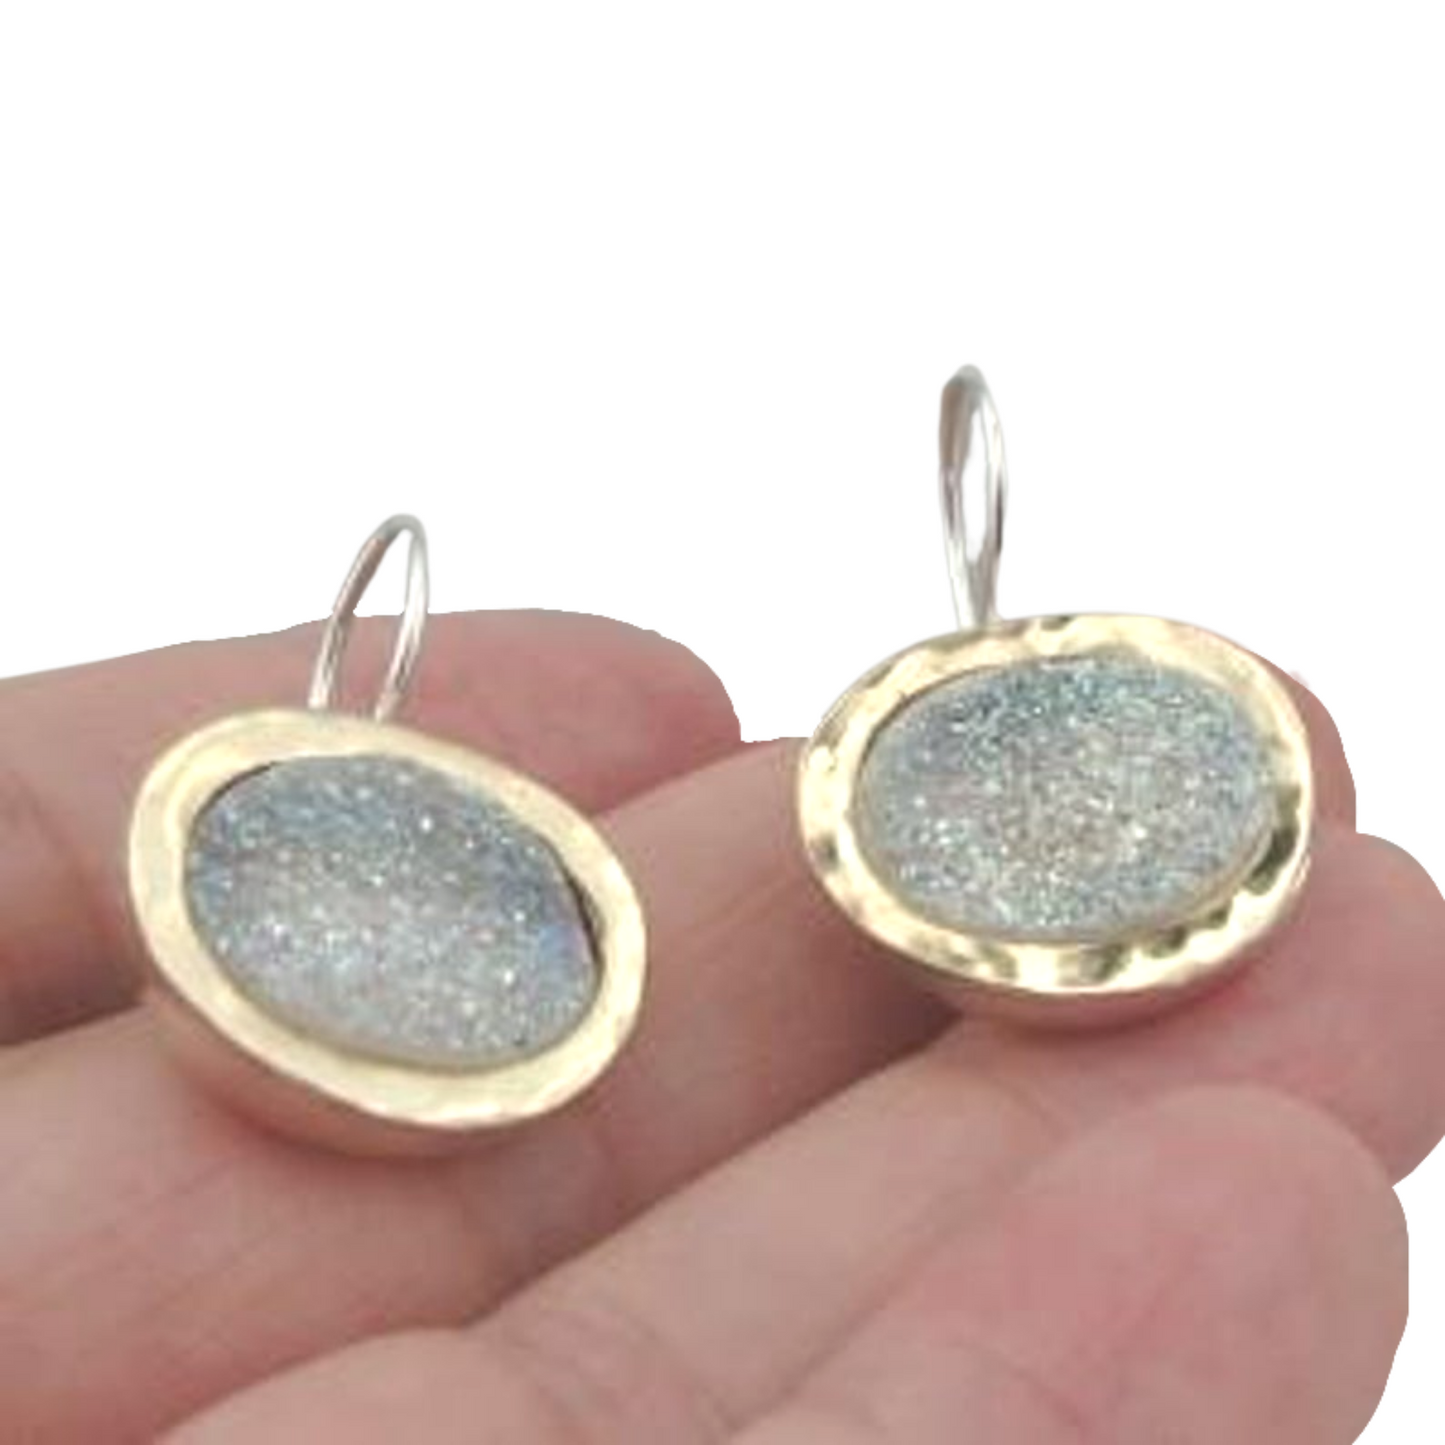 Hadar Designers 9k Yellow Gold 925 Silver Opal Druzy Earrings Handmade Israeli Jewelry